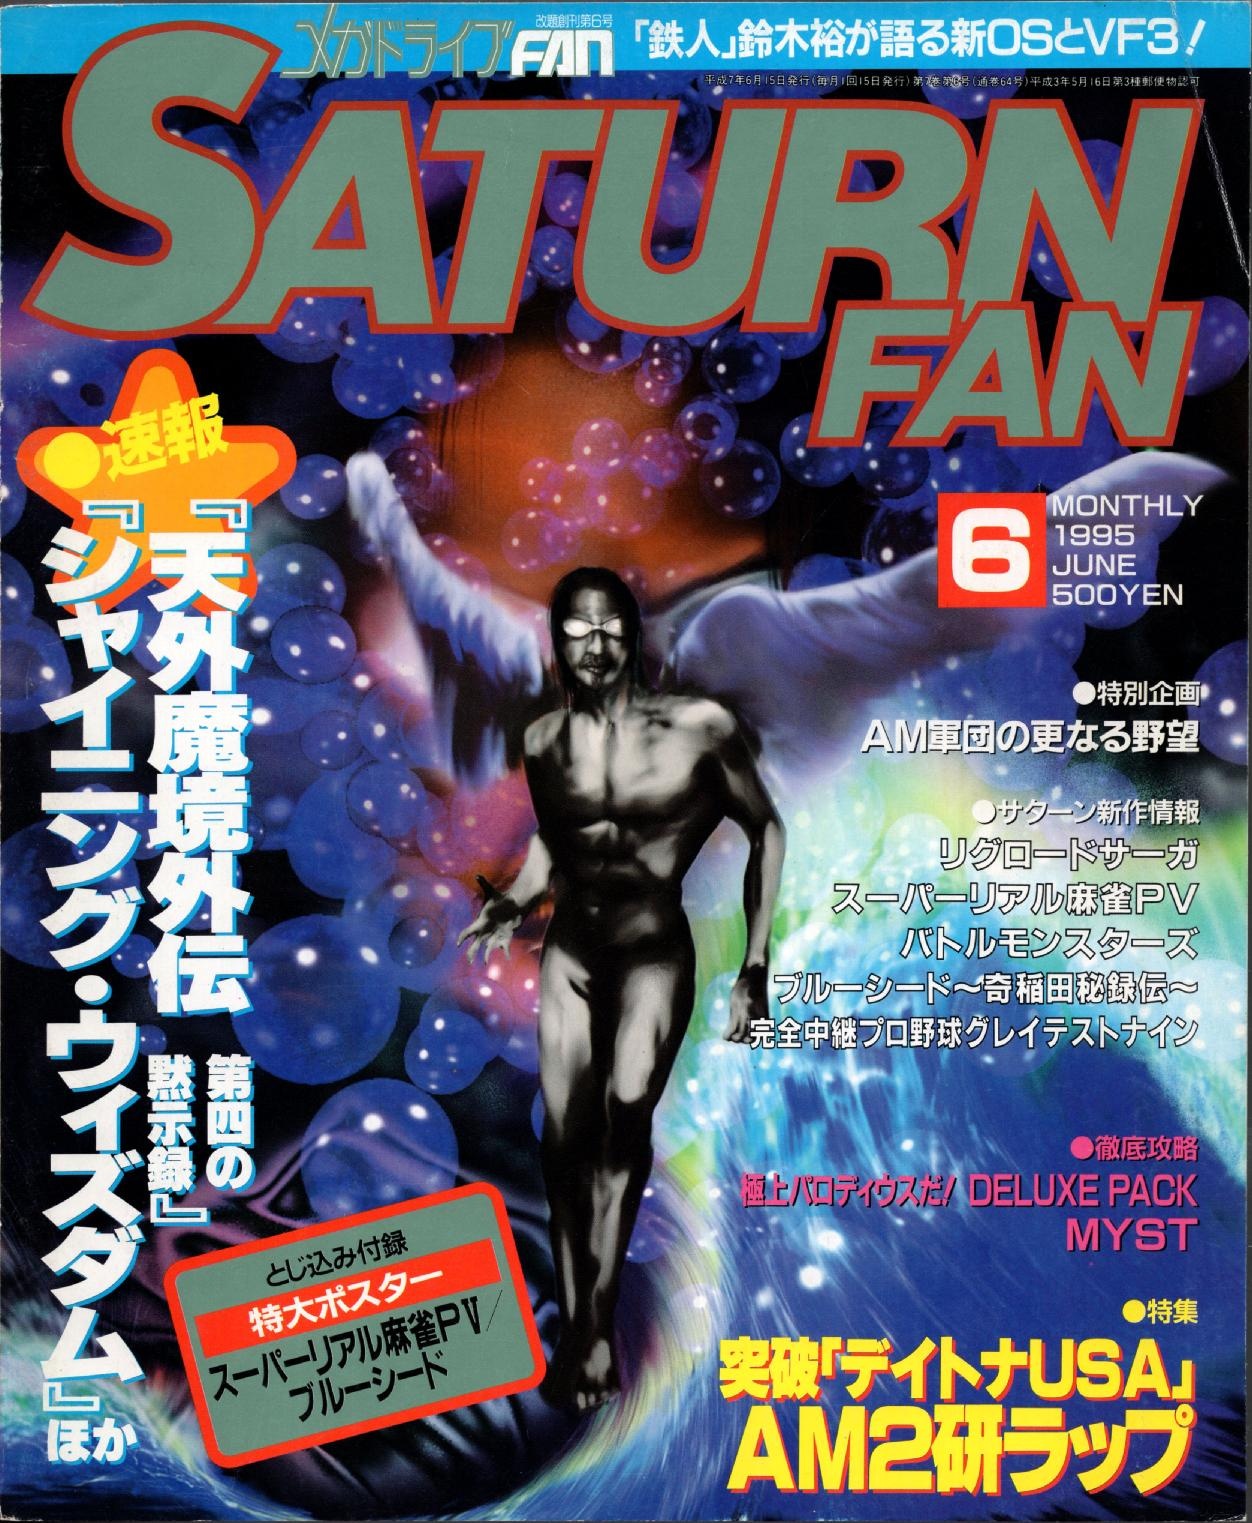 SaturnFan JP 1995-06 19950615.pdf